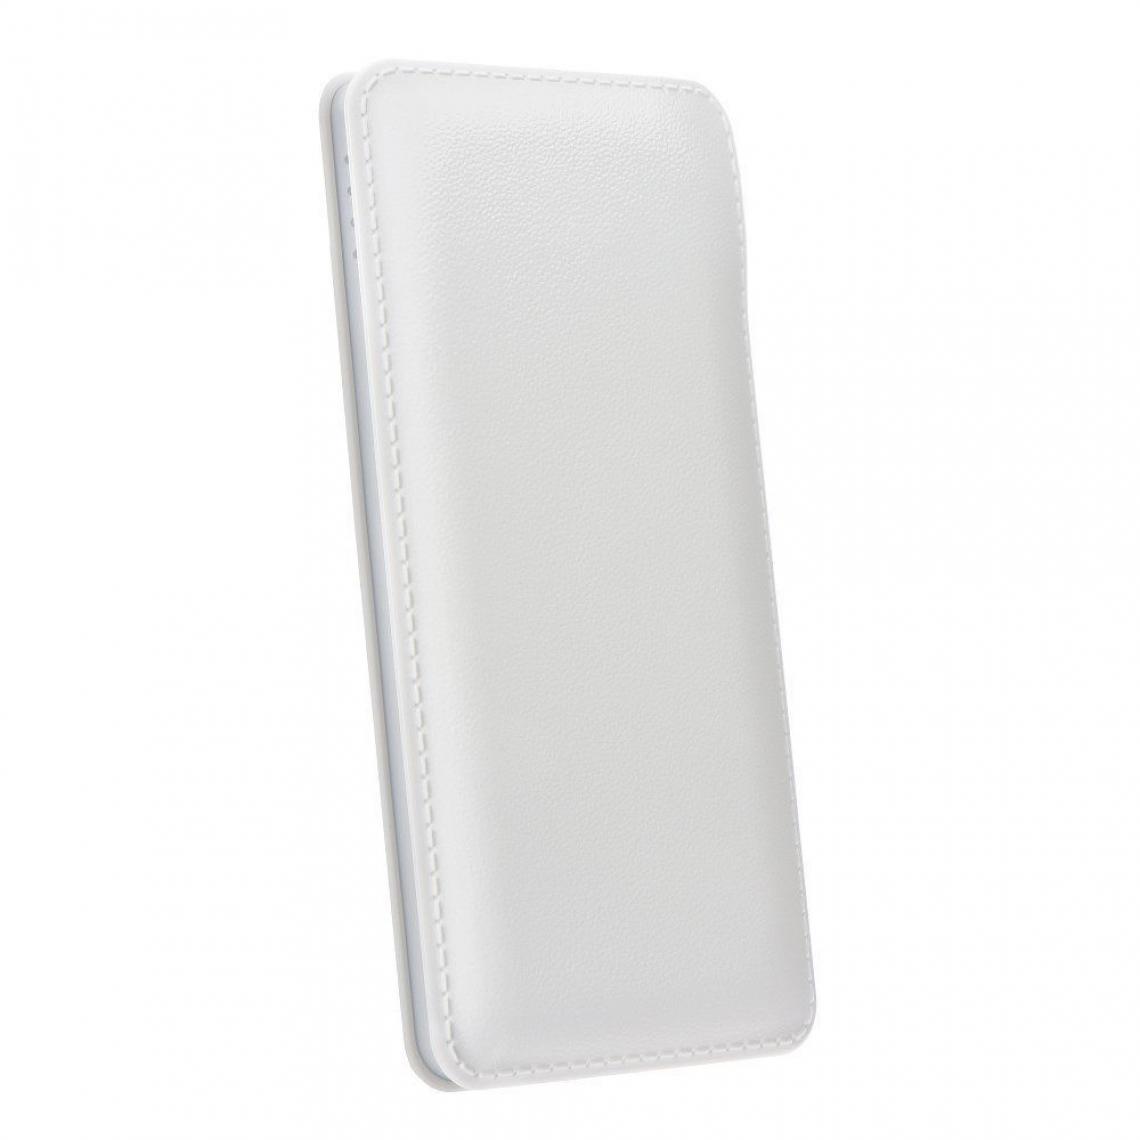 Ozzzo - Chargeur batterie externe 30000 mAh powerbank ozzzo blanc pour ONE PLUS ONEPLUS X - Autres accessoires smartphone